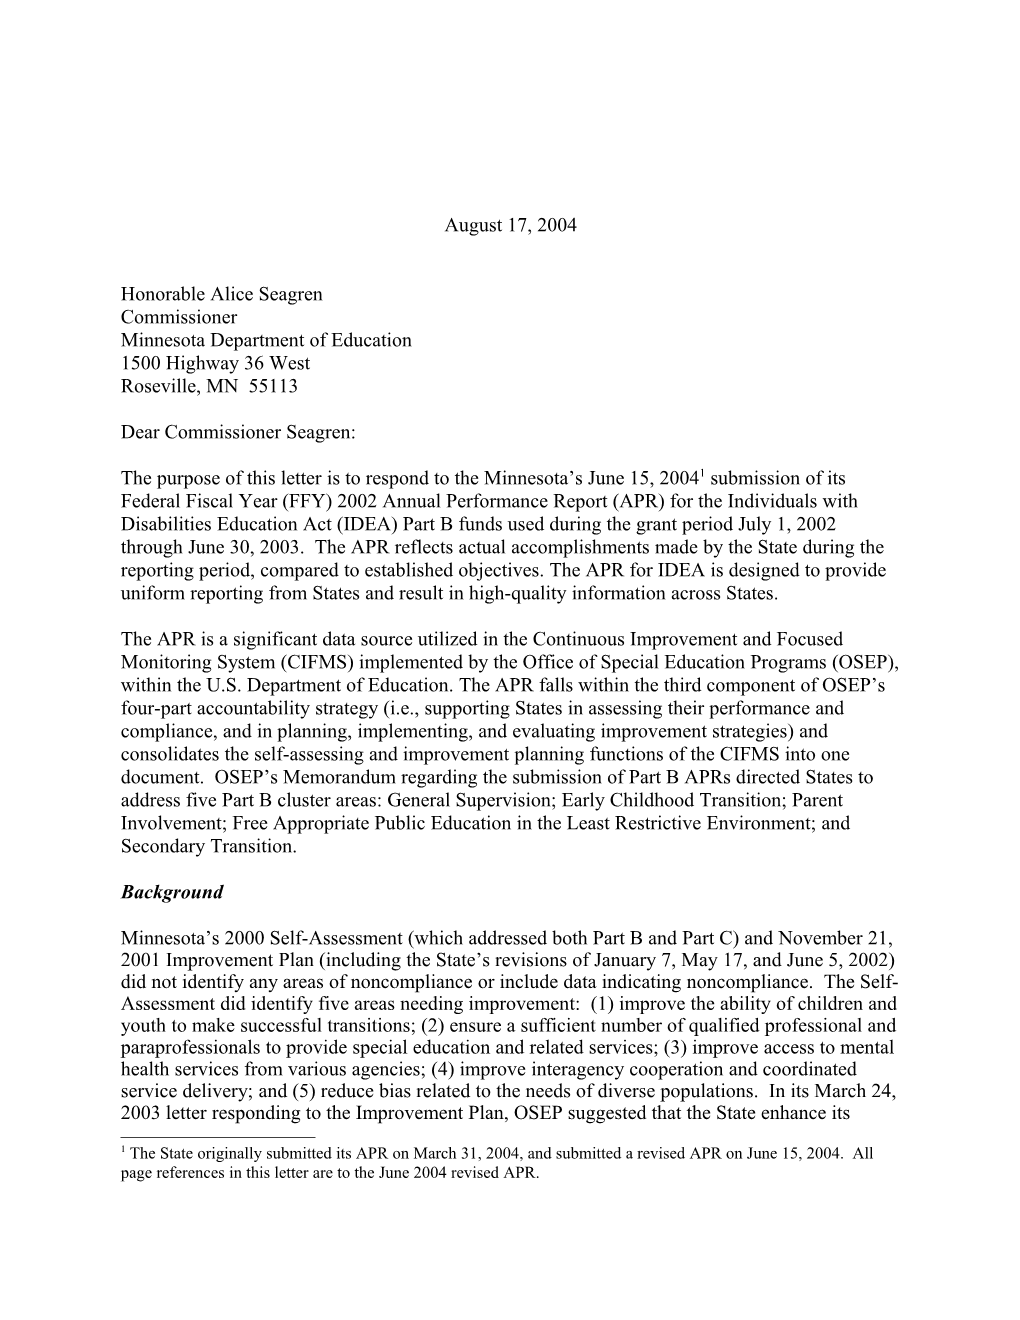 Minnesota Part B APR Letter, 2002-2003 (MS Word)